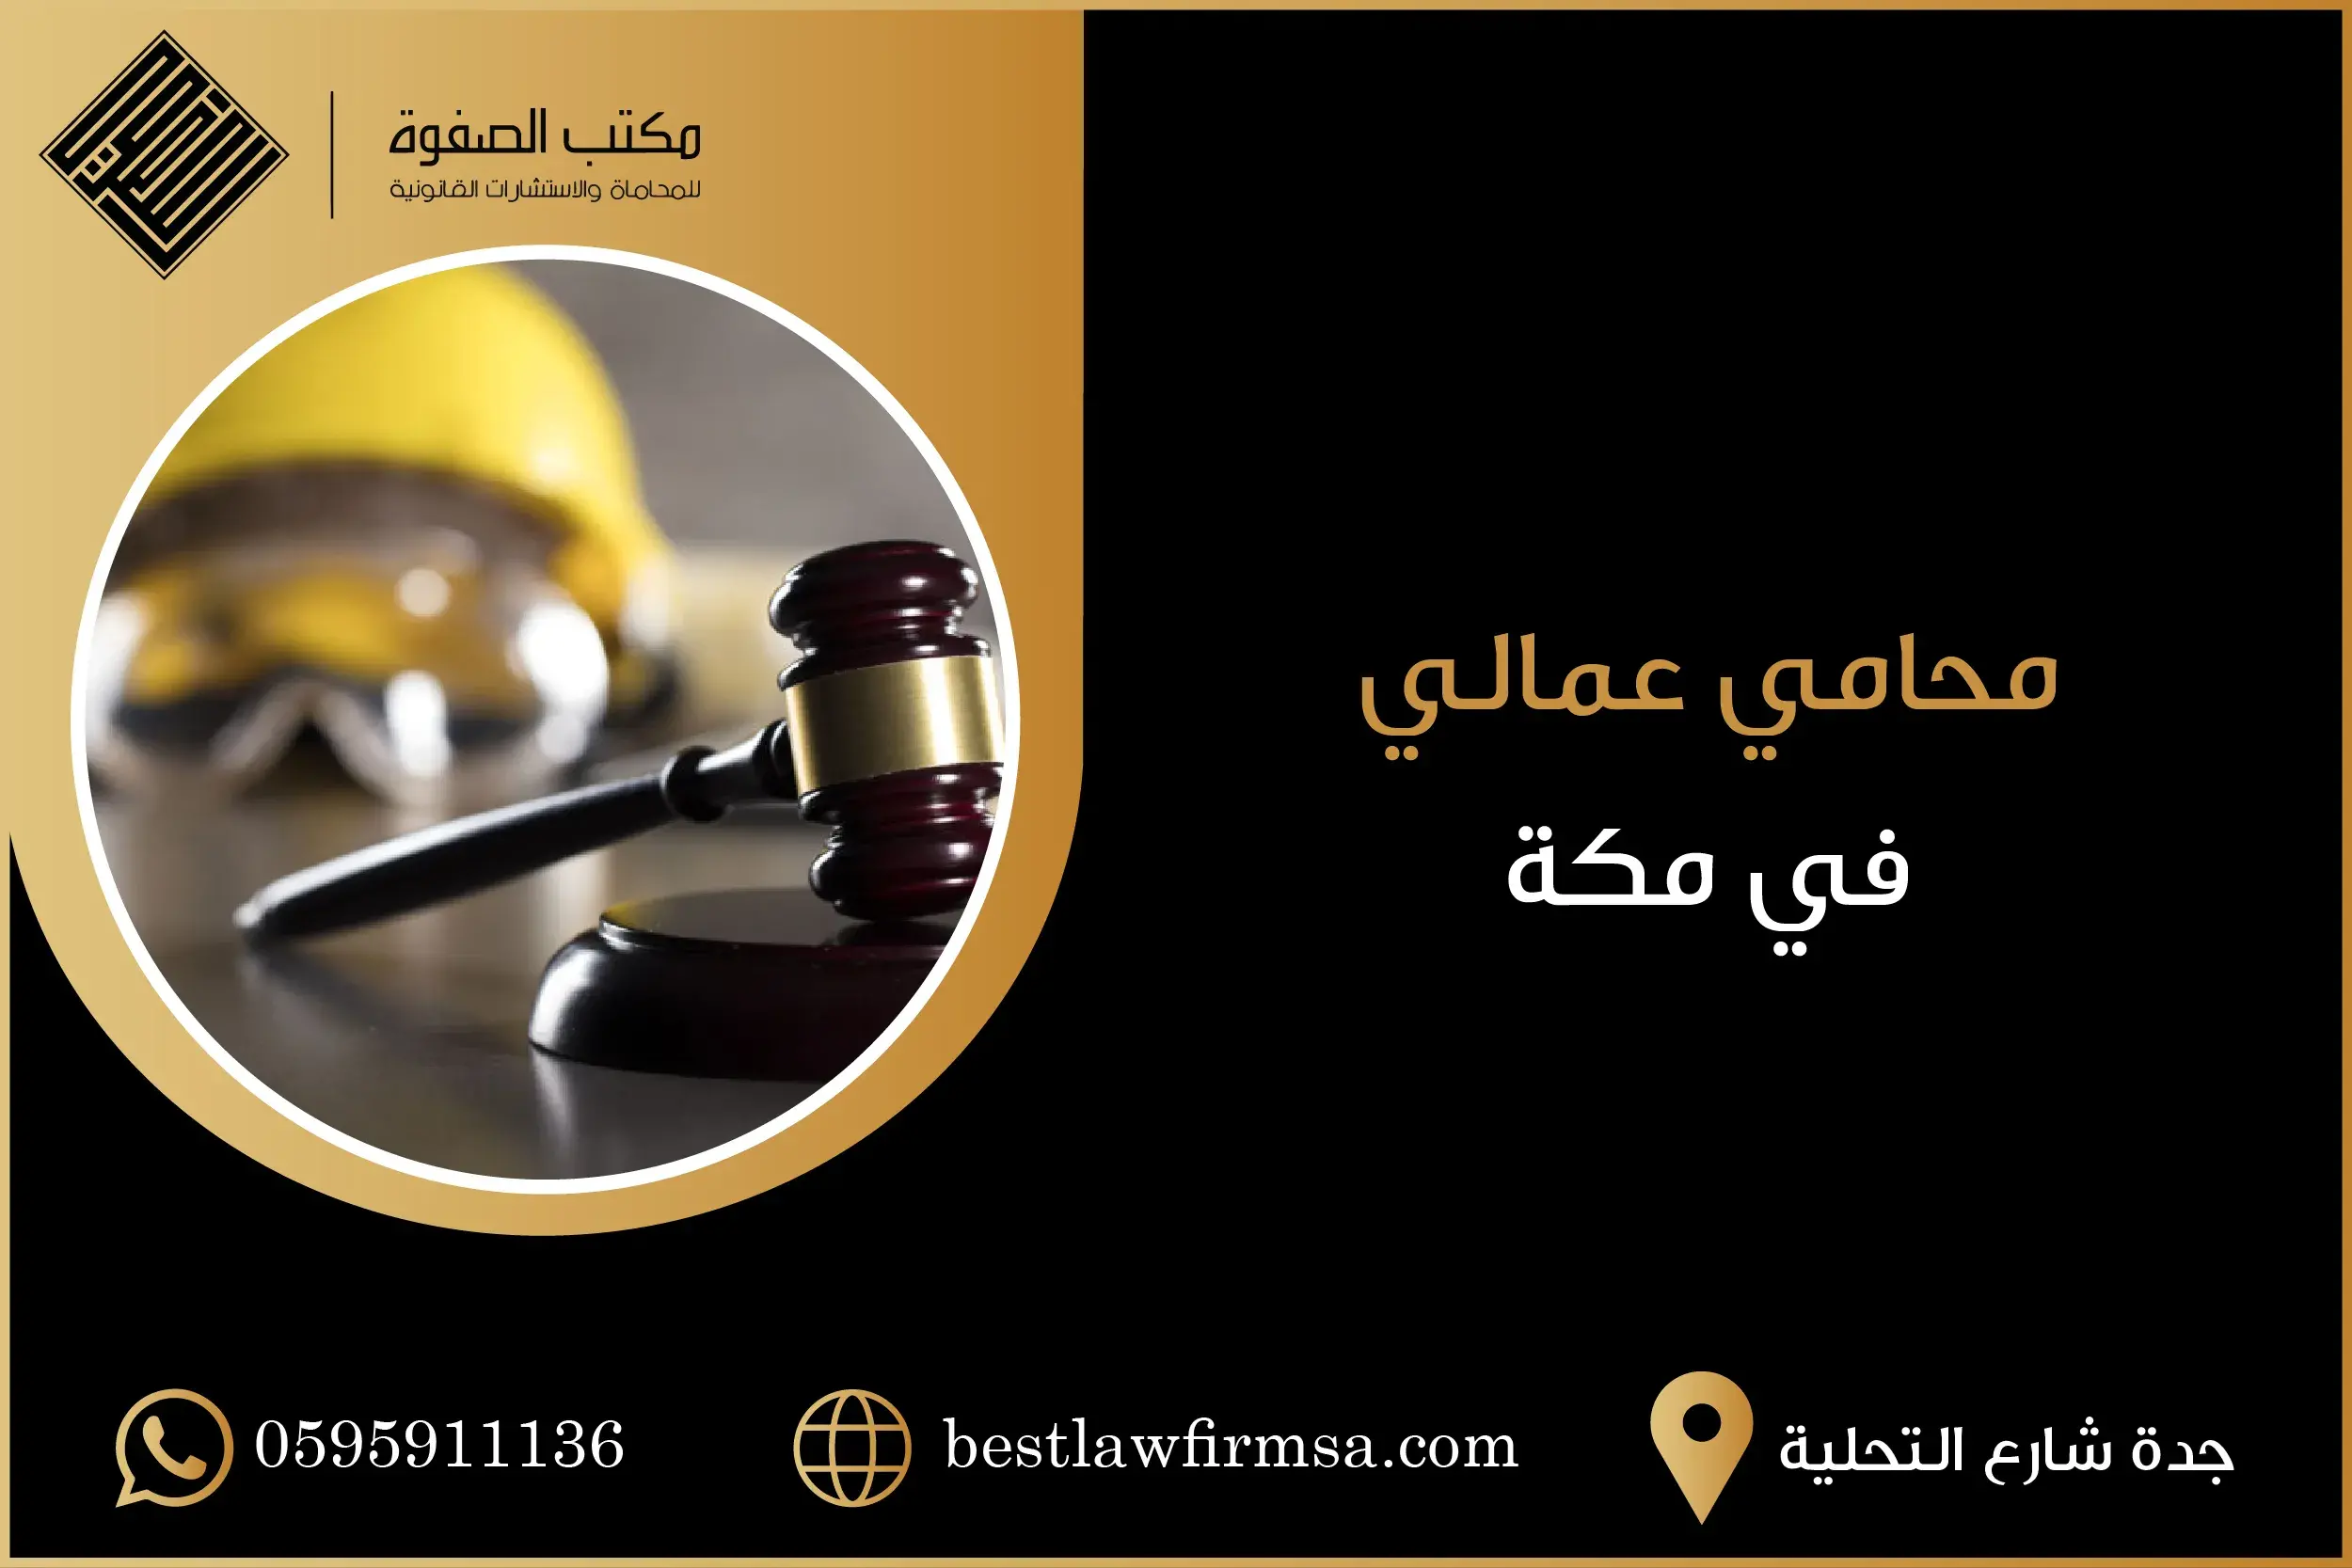 محامي عمالي في مكة | أقوى محامي بمكة للقضايا العمالية